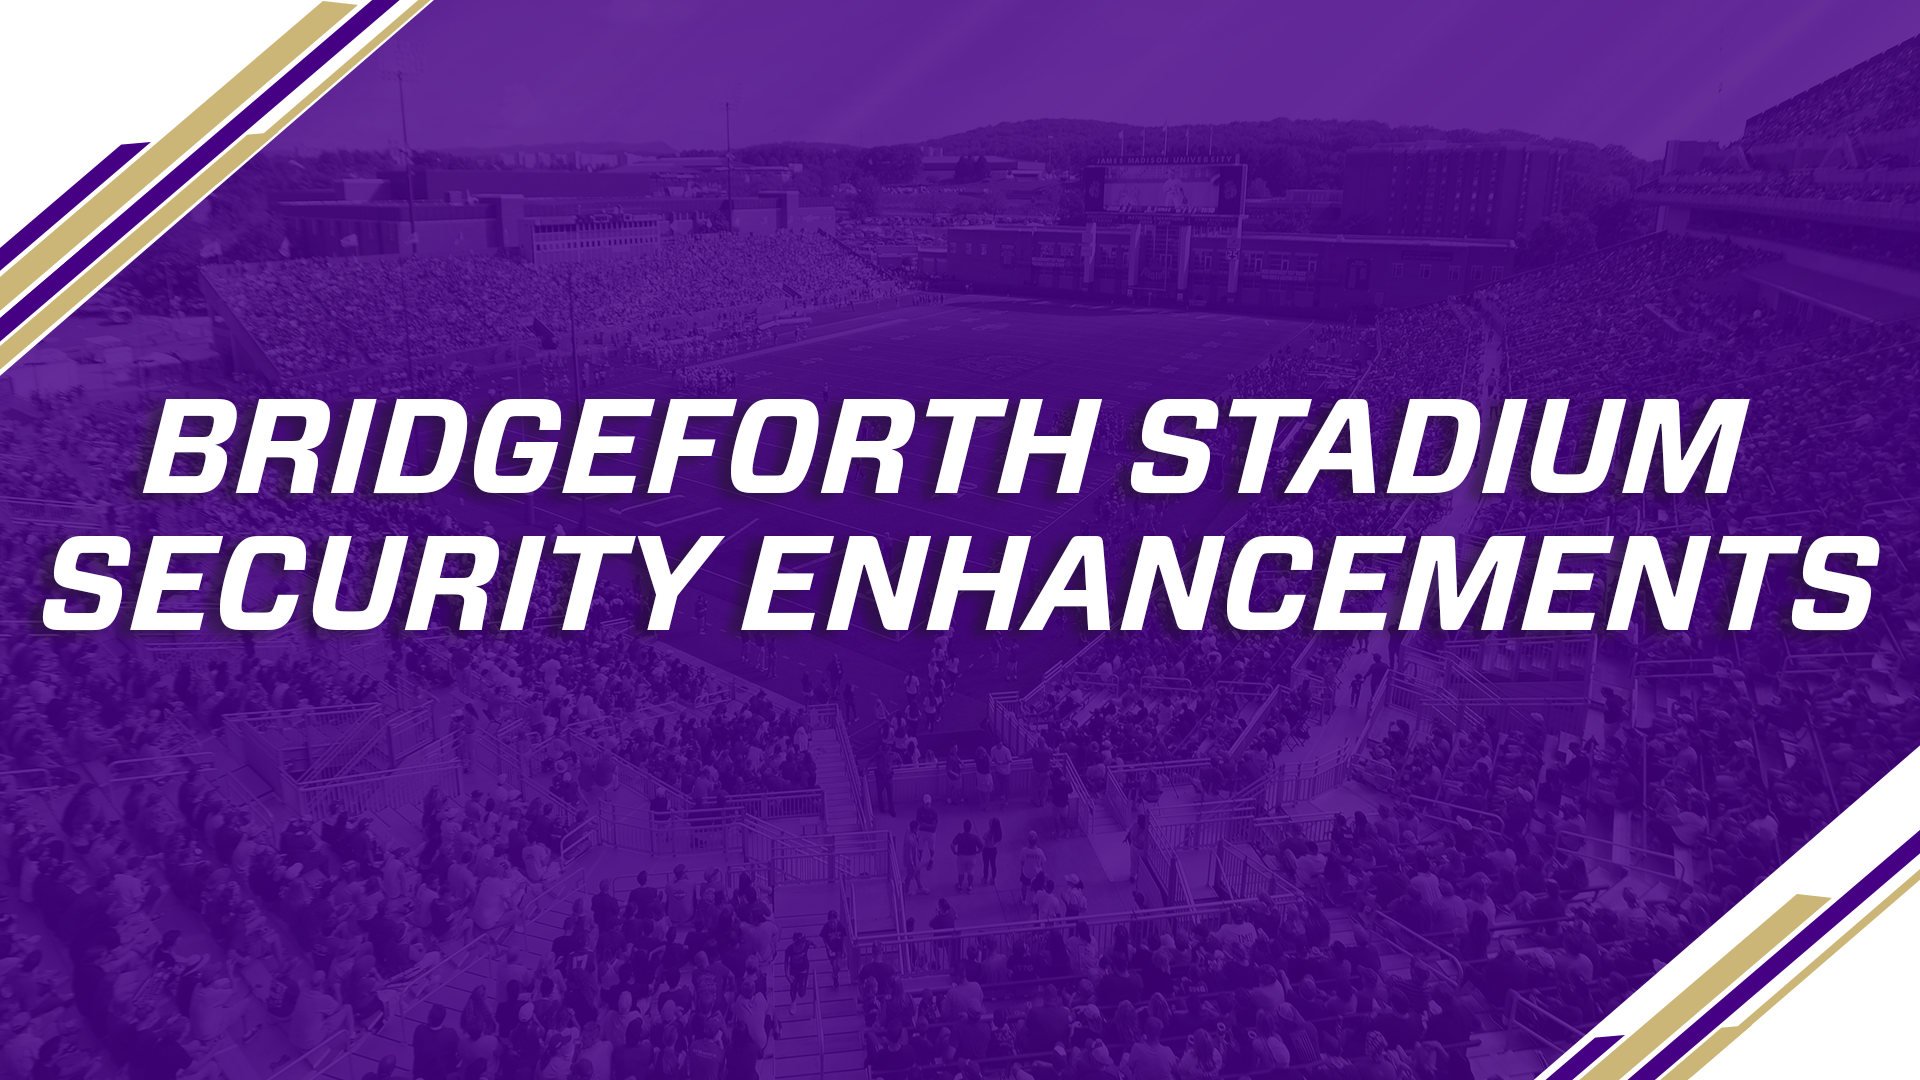 Jmu Announces Bridgeforth Stadium Security Enhancements James